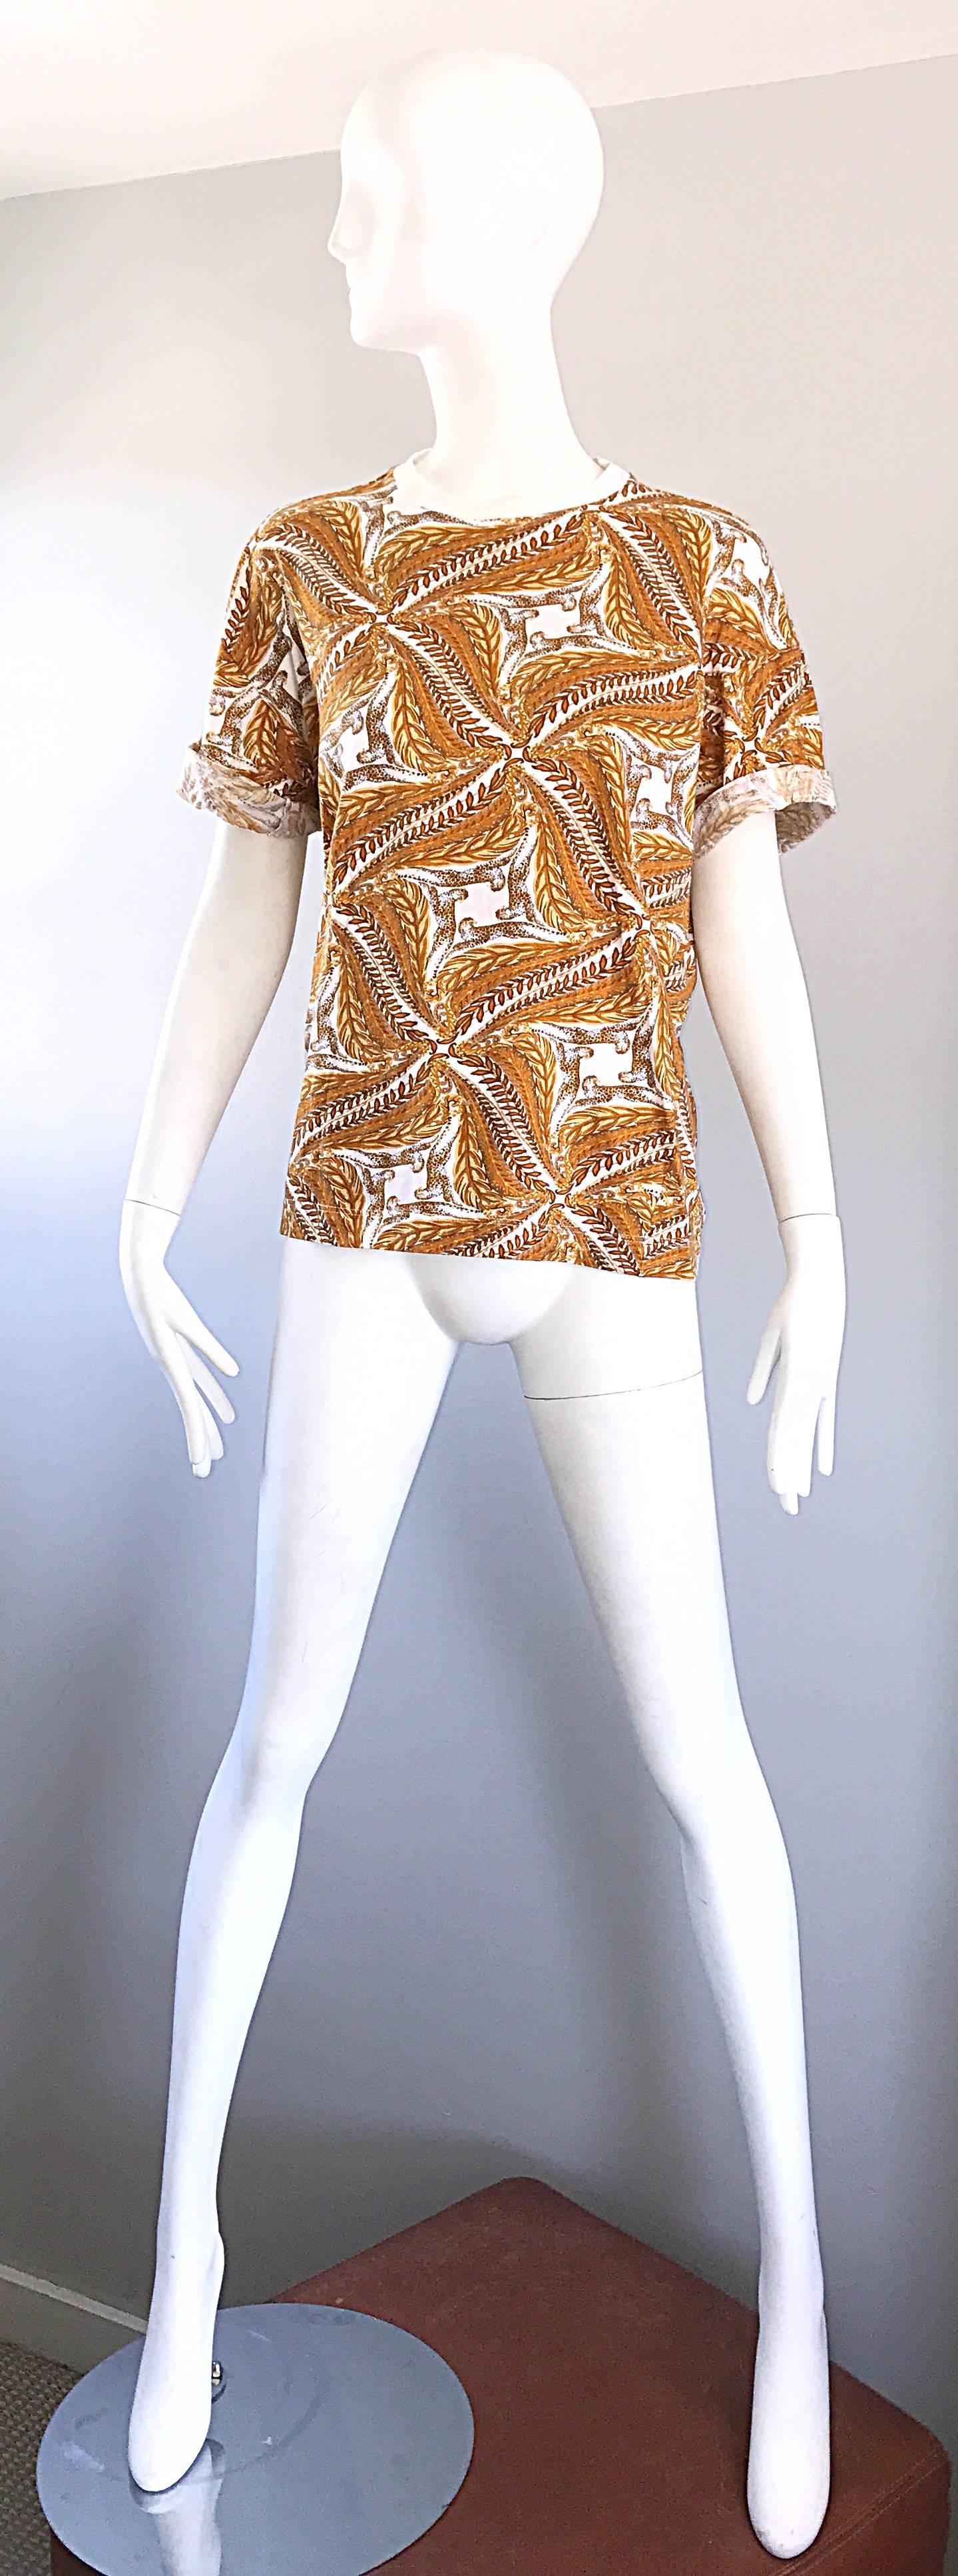 Schickes Vintage-T-Shirt von SALVATORE FERRAGOMO mit Geparden-, Leoparden- und Weizendruck aus Baumwolle mit kurzen Ärmeln! Mit symmetrischen Drucken in Gold, Gelb, Ringelblume und Weiß. Die Ärmel können hochgekrempelt werden, um einen modischen